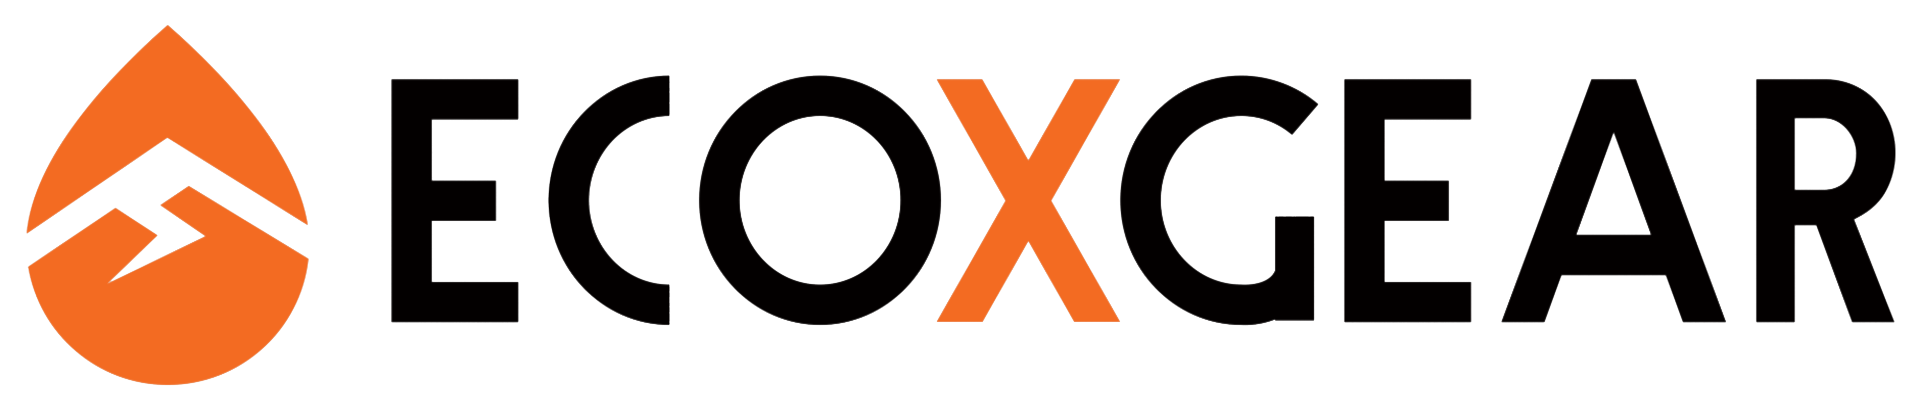 Ecoxgear Logo